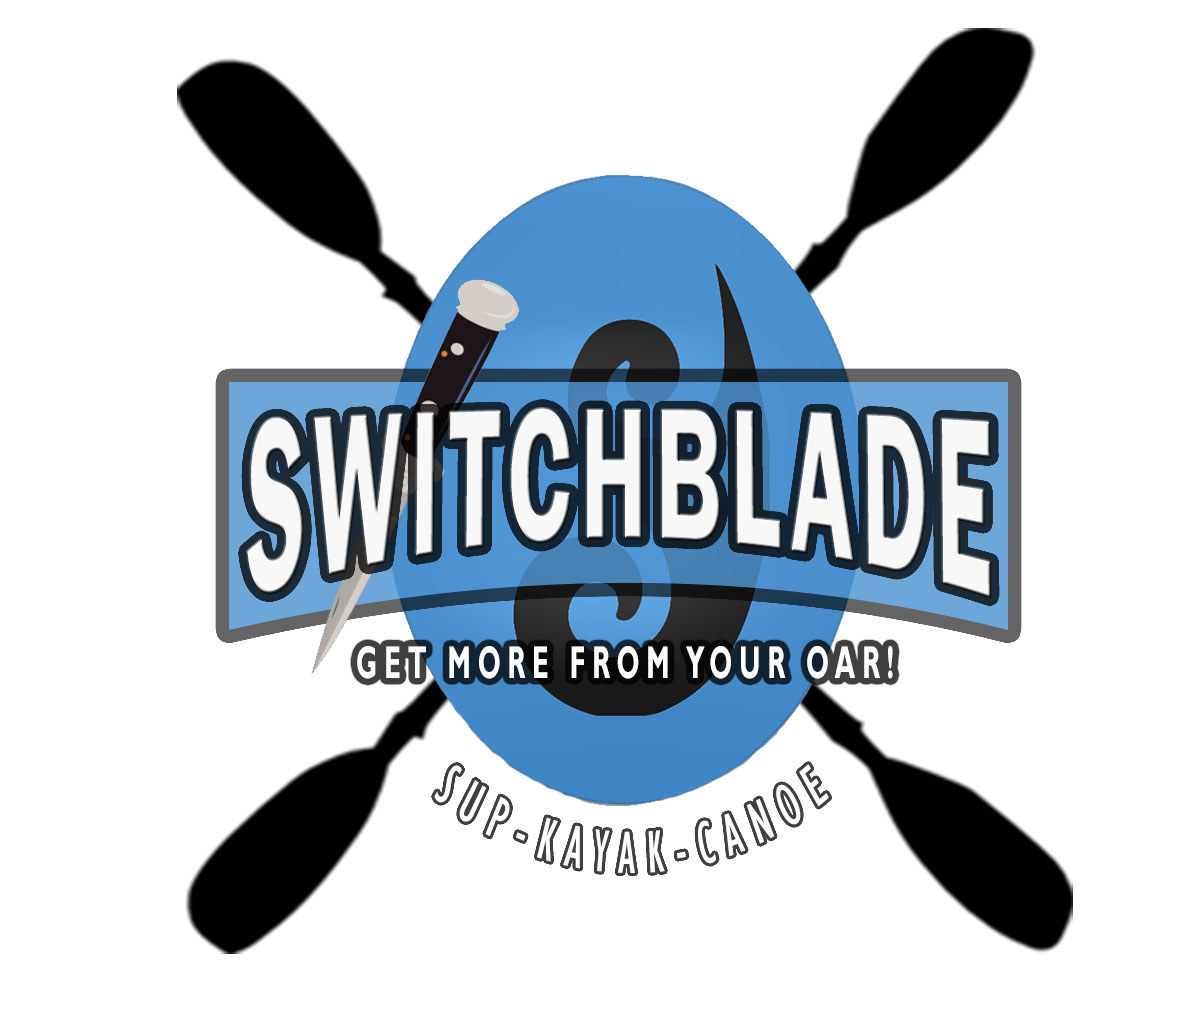 Switchblade final